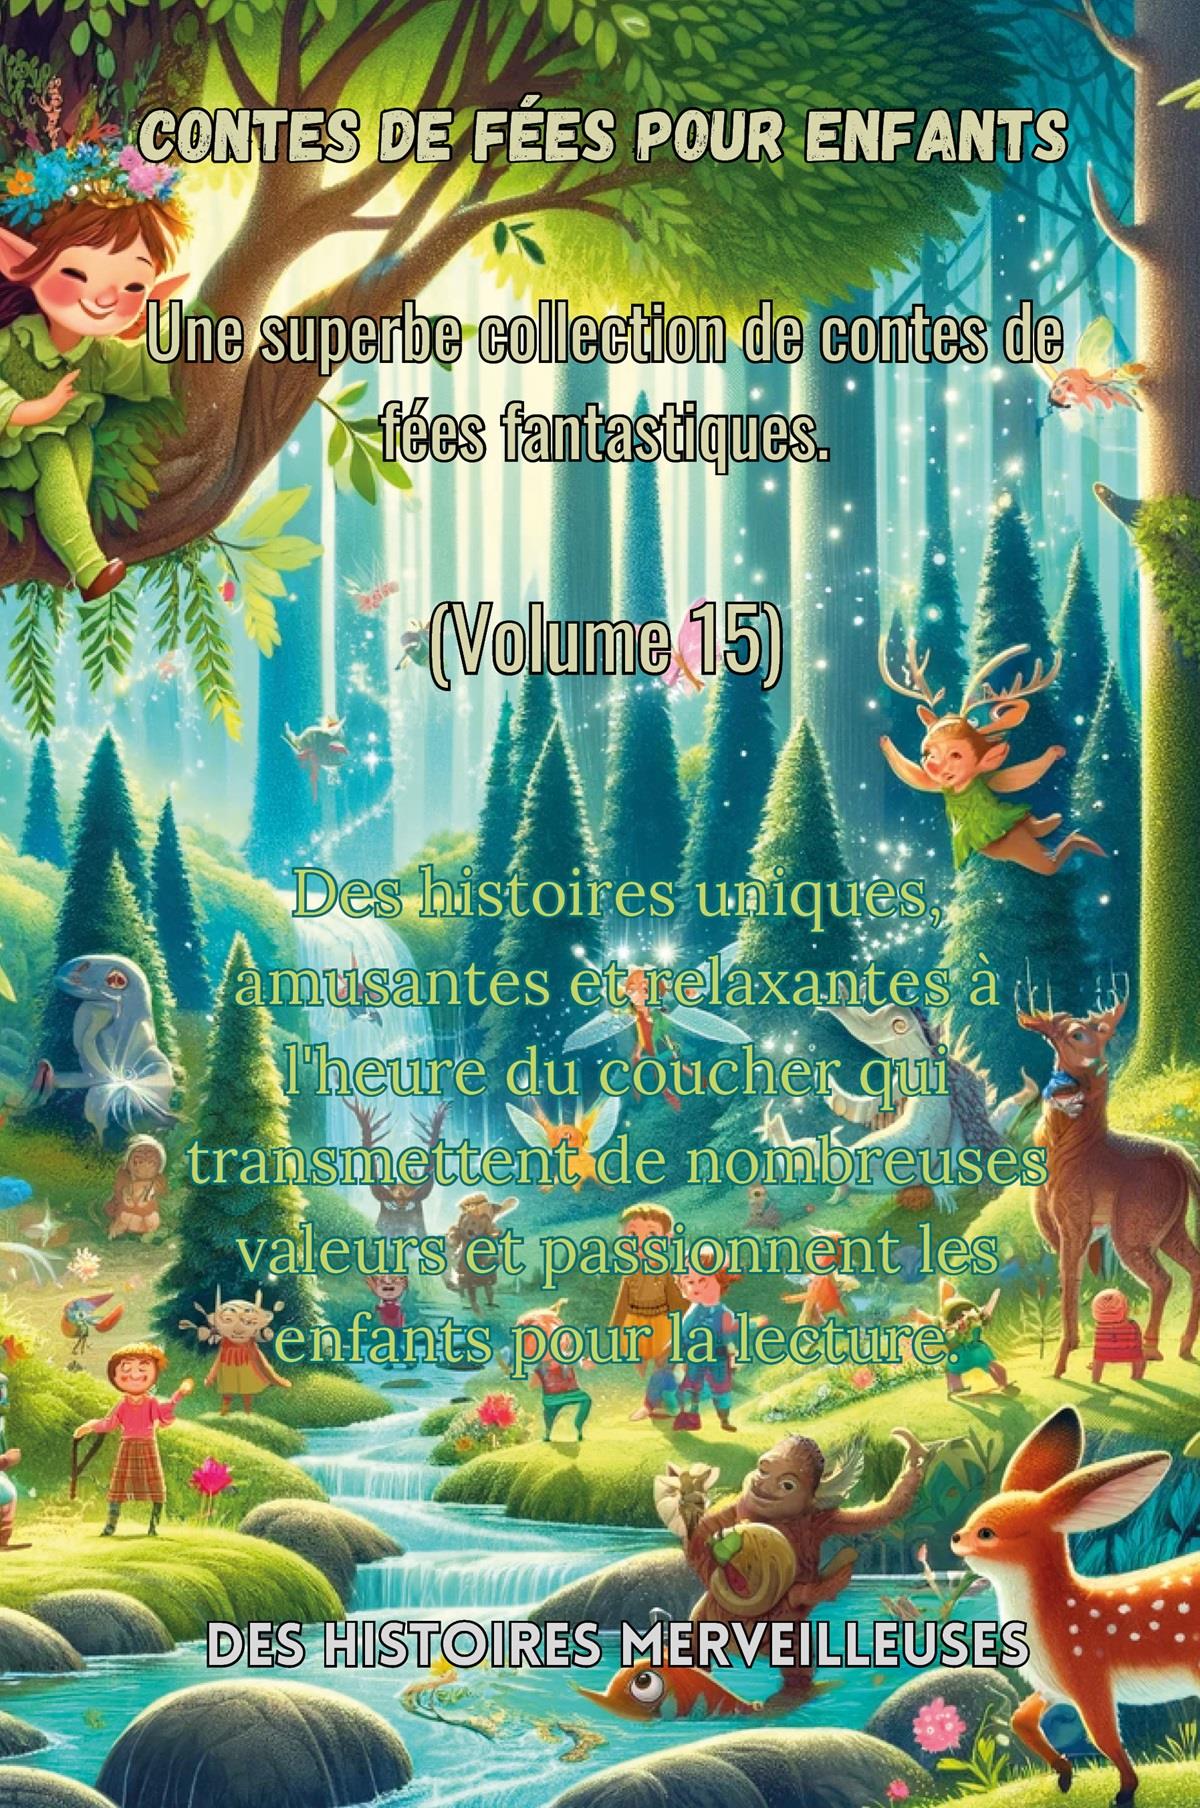 Contes de fées pour enfants Une superbe collection de contes de fées fantastiques. (Volume 15)